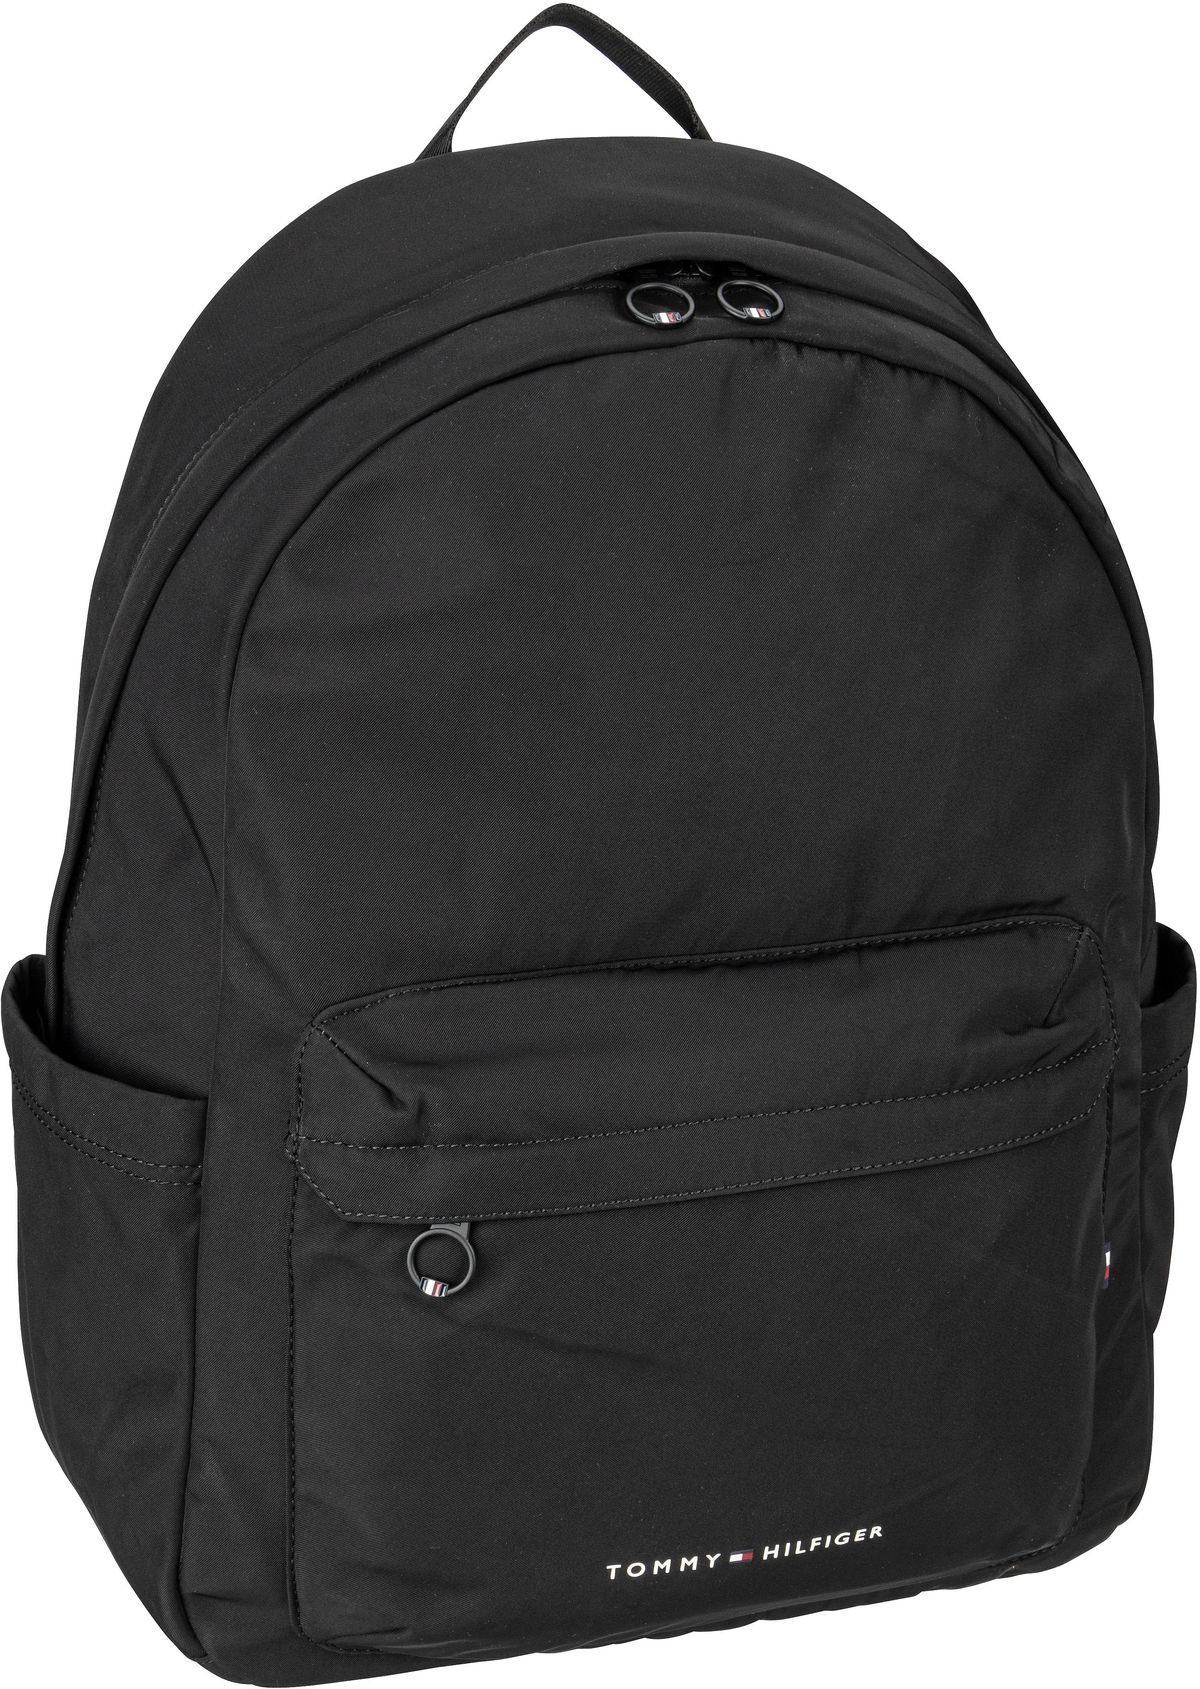 Tommy Hilfiger TH Skyline Backpack PSP24  in Schwarz (14.3 Liter), Rucksack / Backpack